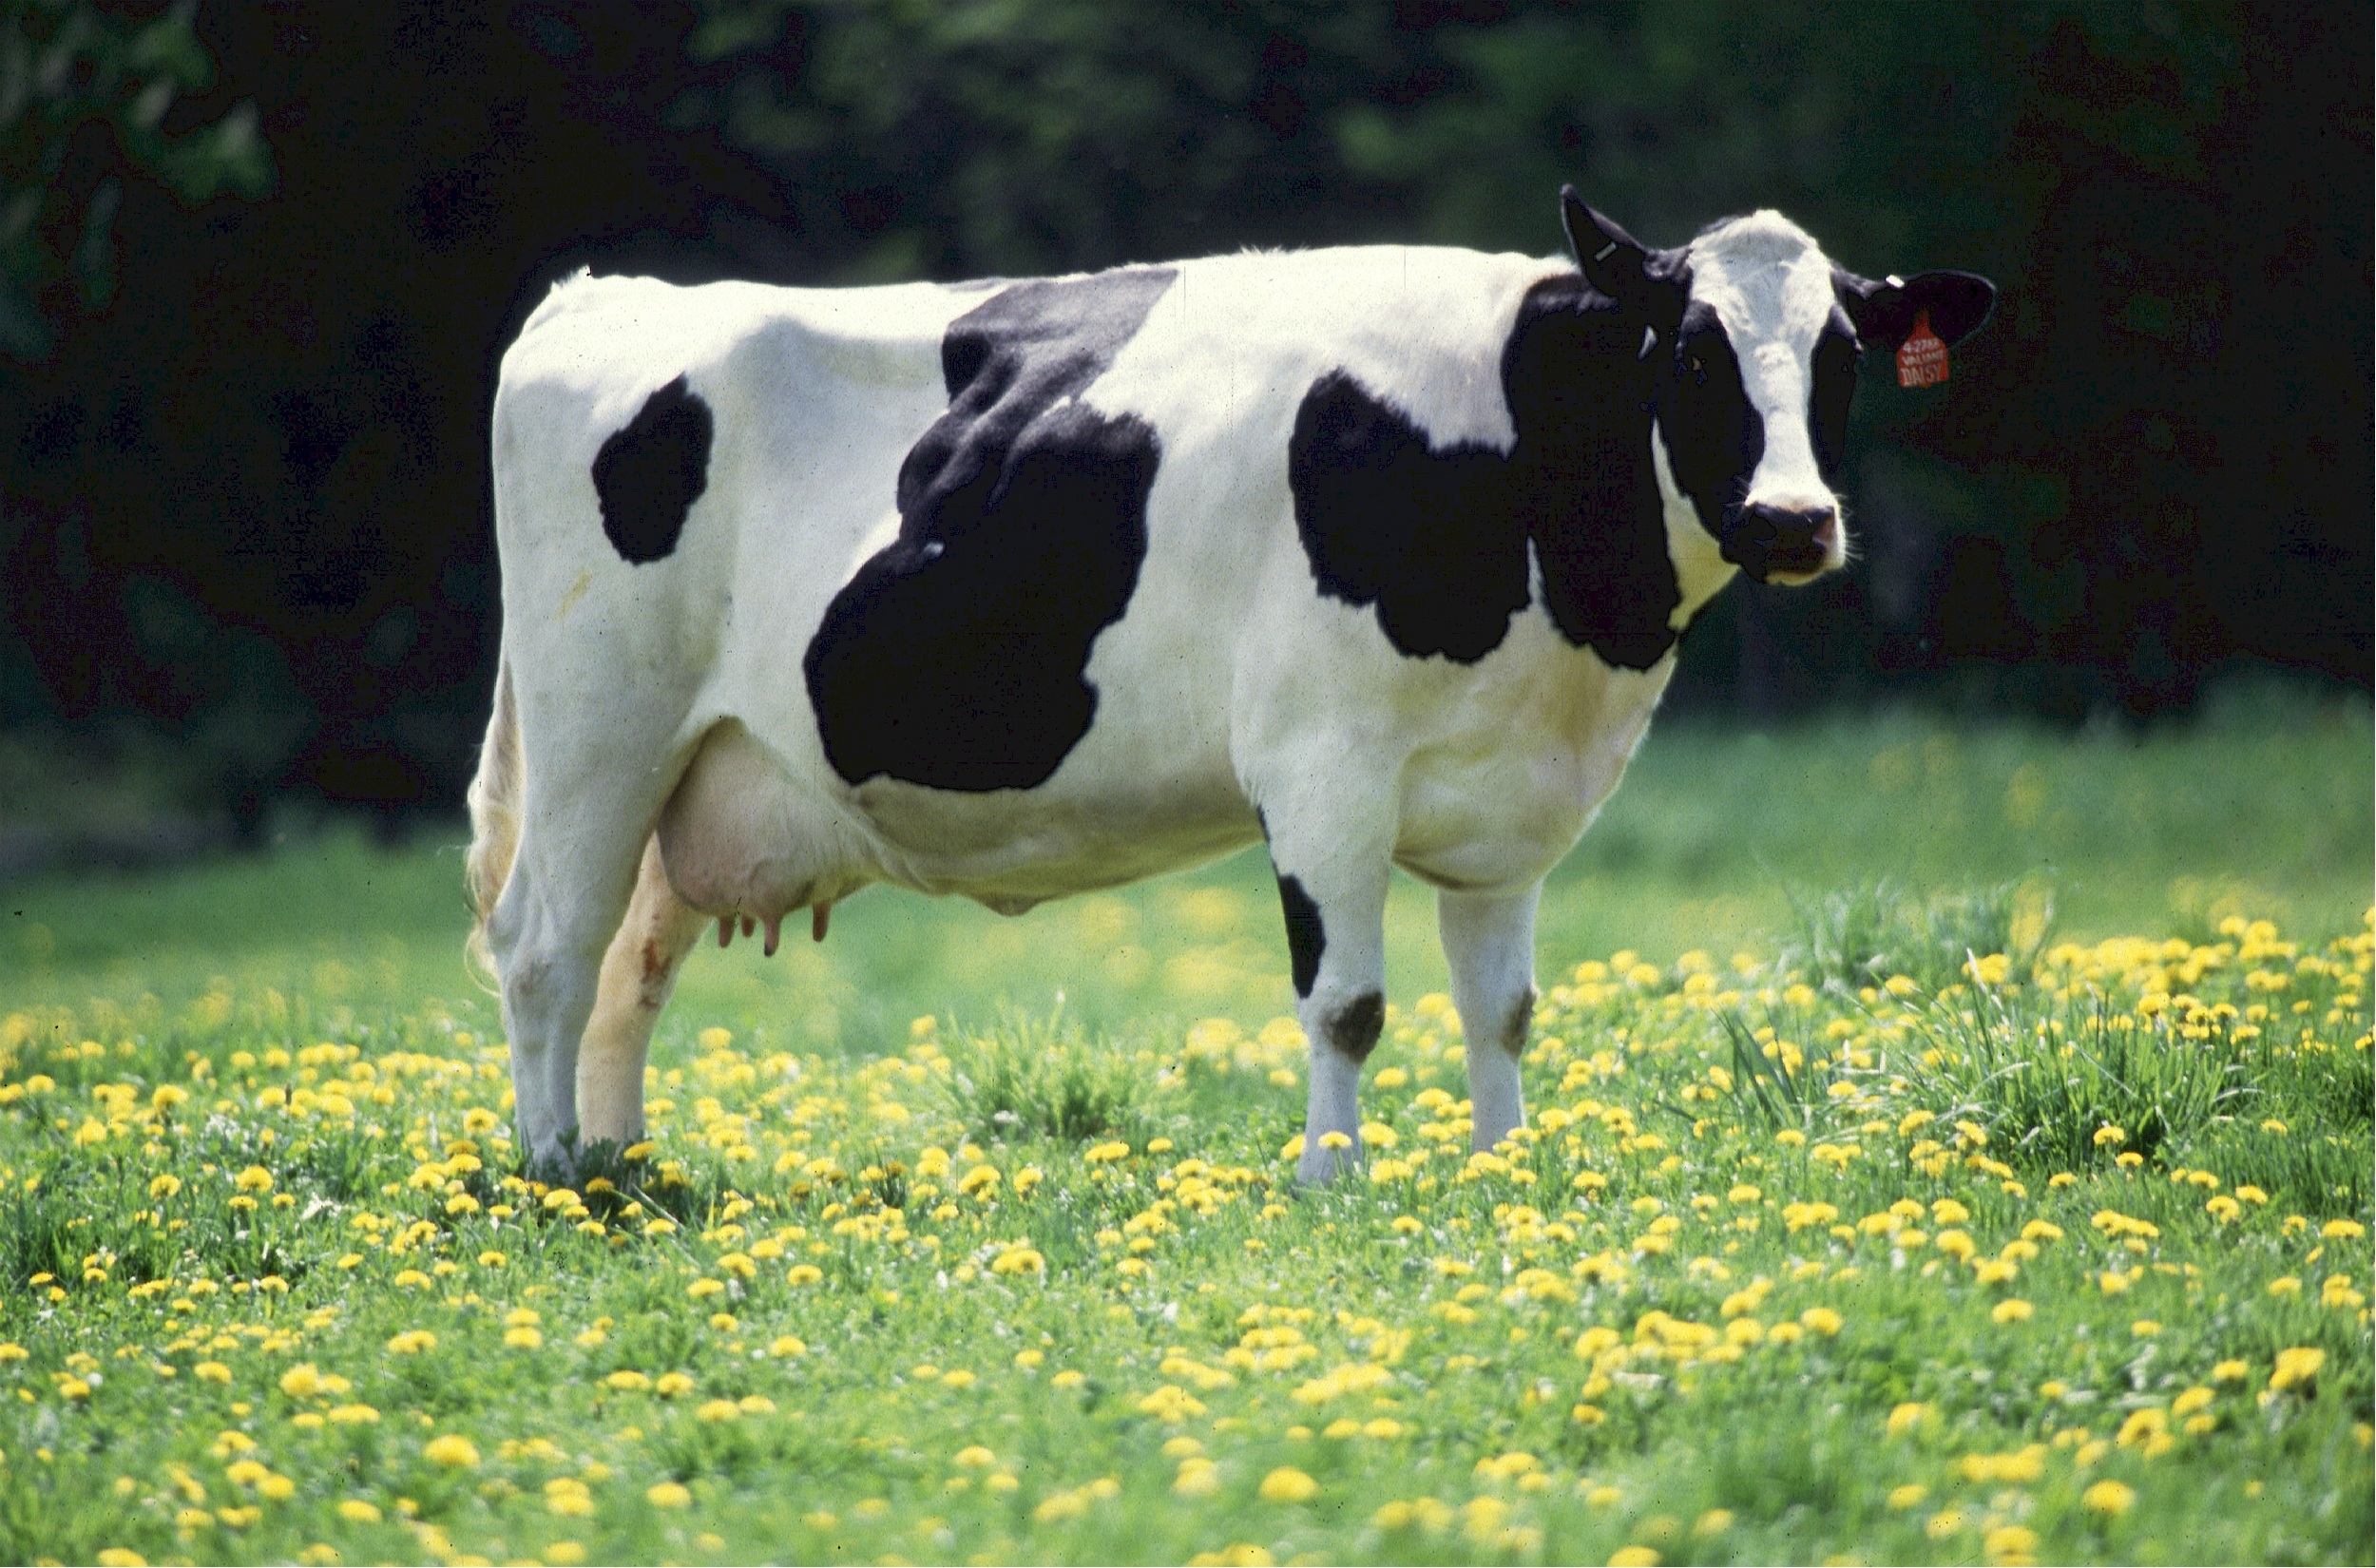 Cow feeding photo